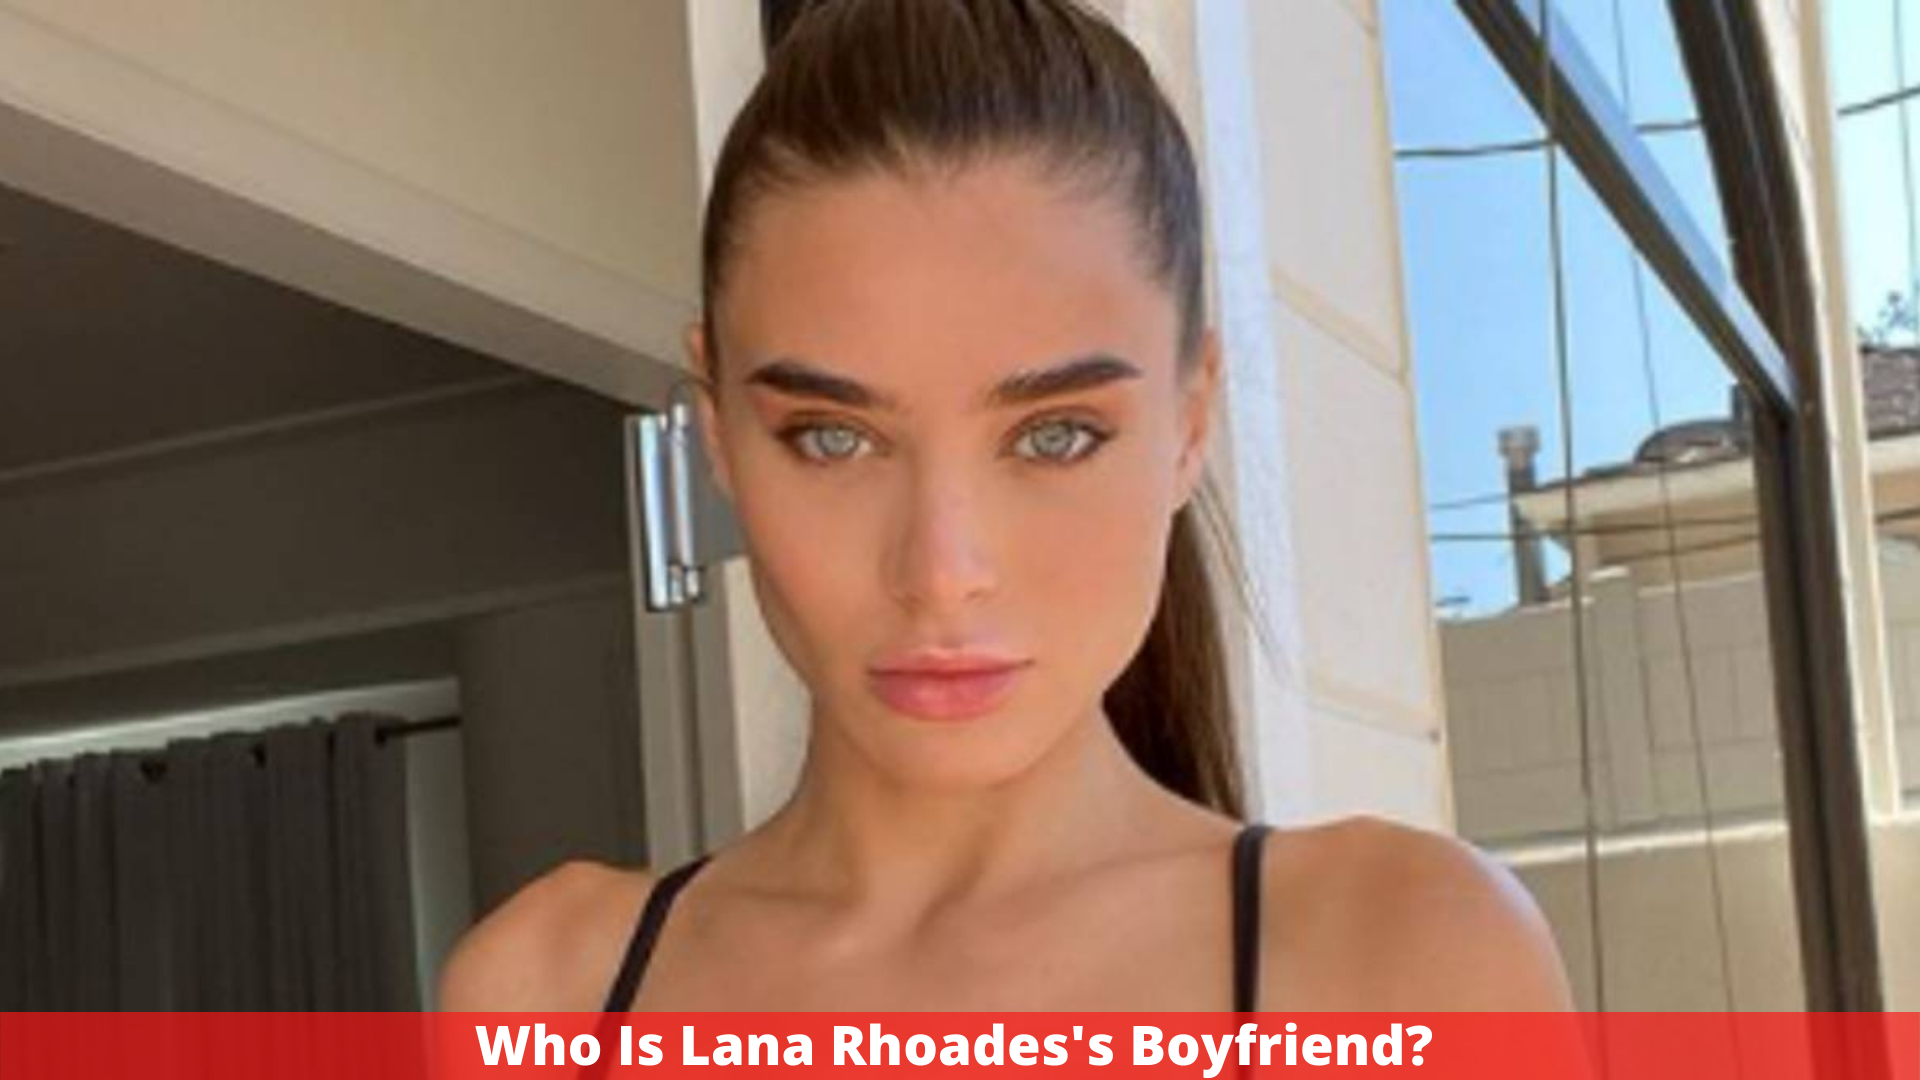 Who Is Lana Rhoades's Boyfriend?